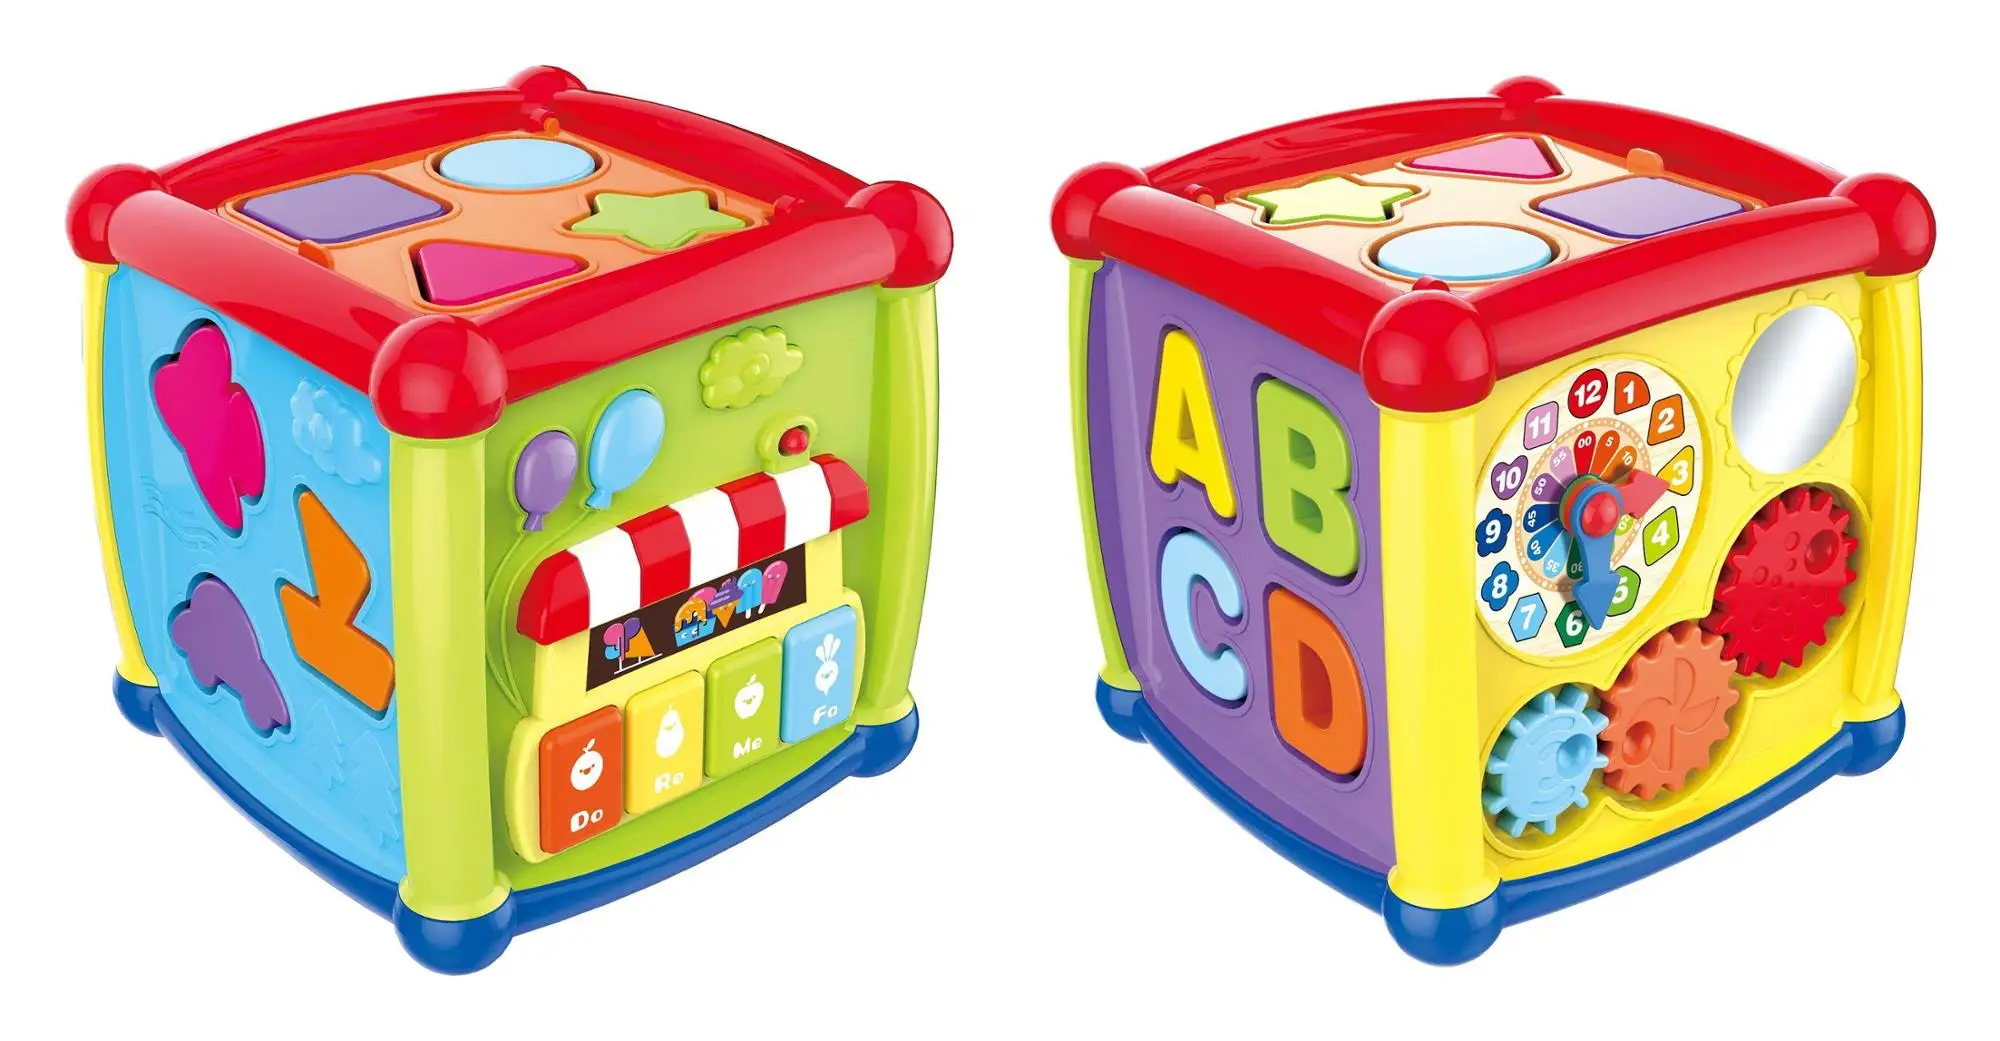 Cube детский. Развивающий куб для детей. Игра музыкальный кубик для детей. Куб Fancy Baby сортер. Сортер ABC куб с функциями.